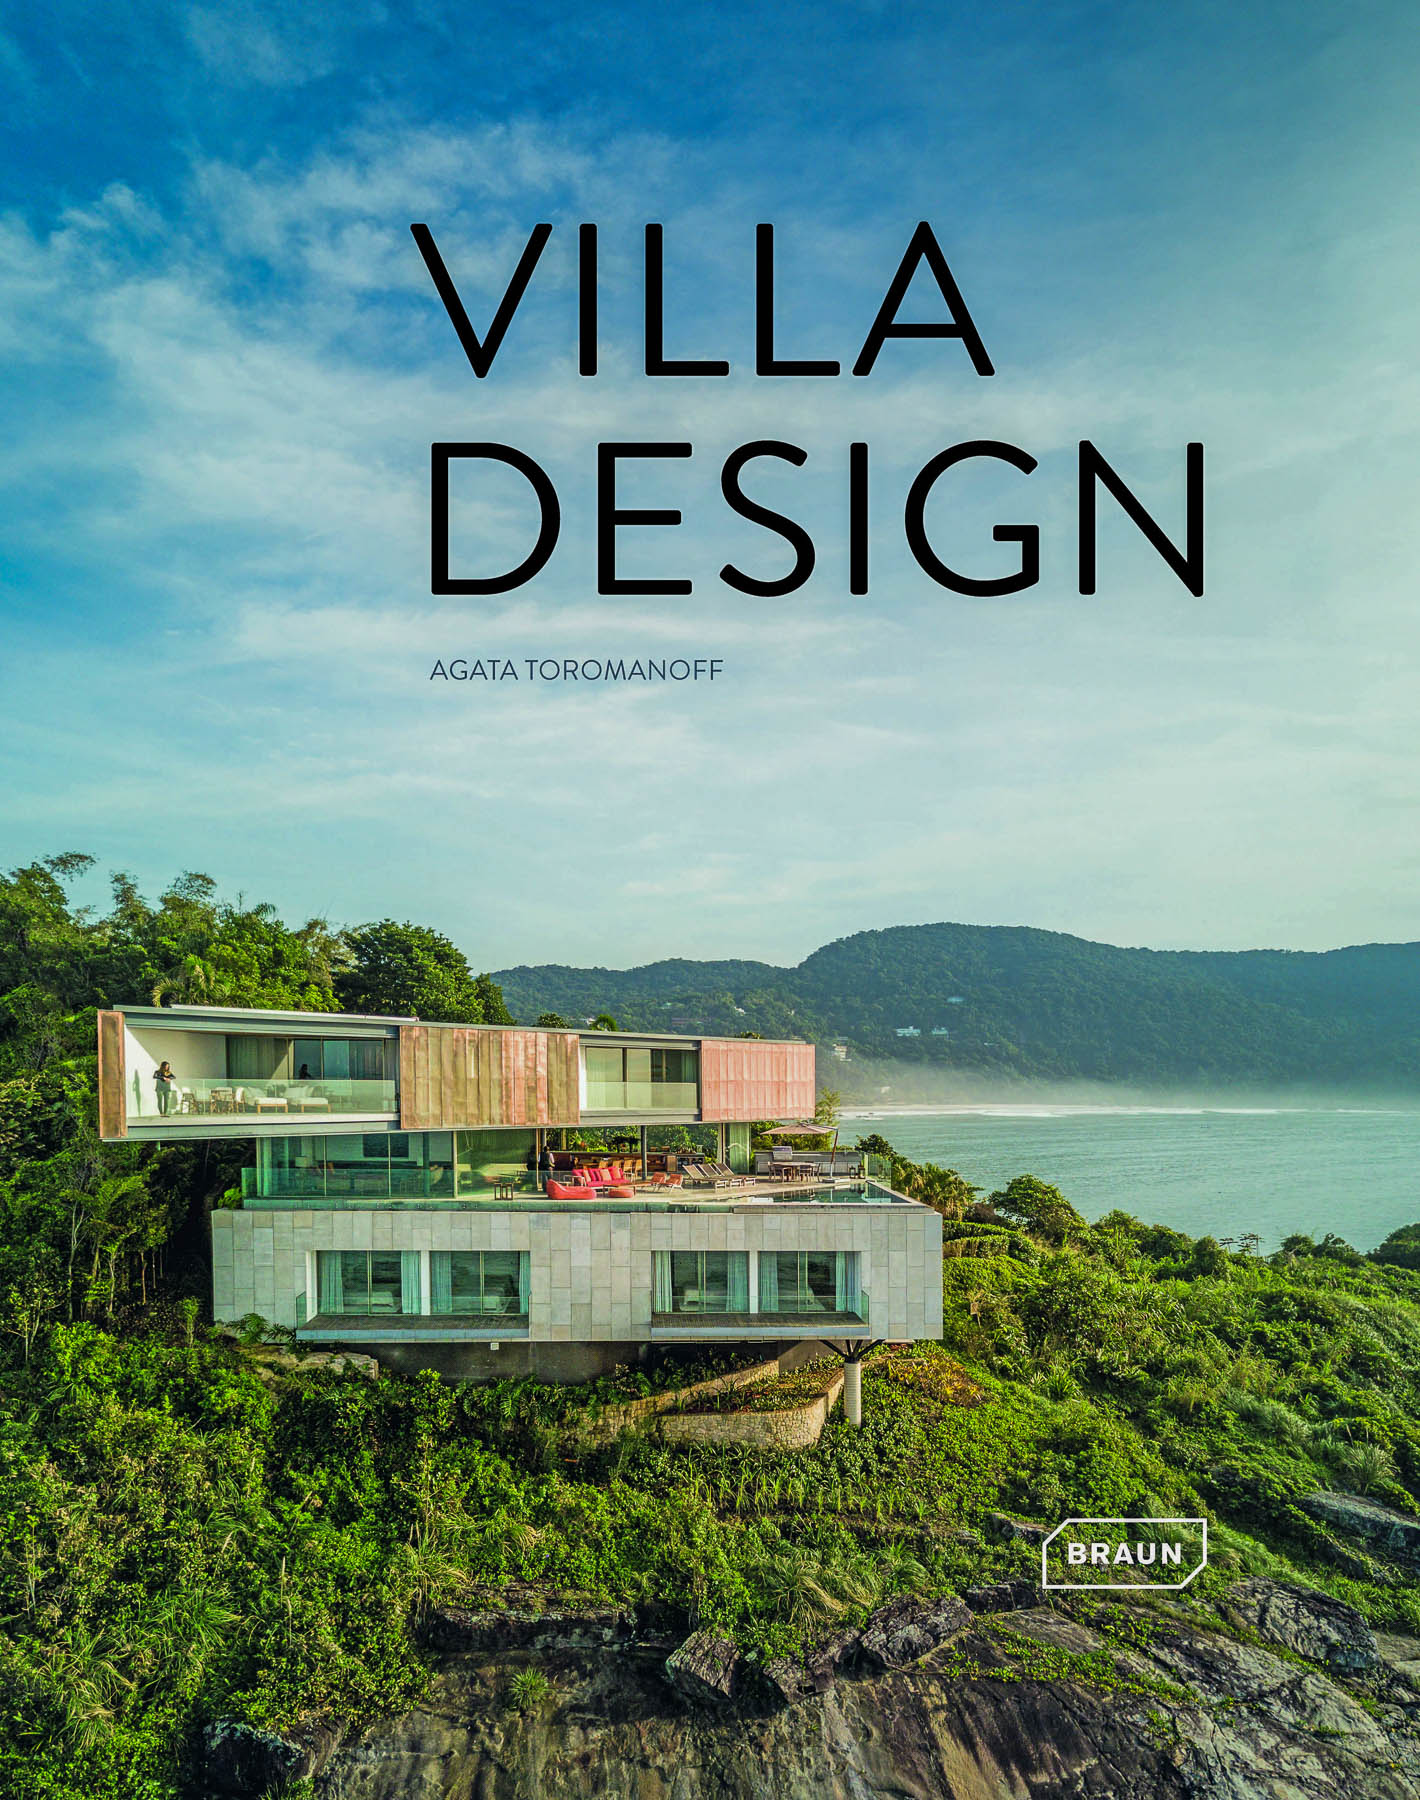 book Villa Design publica o projecto Casa A dos Rem'a com fotogr